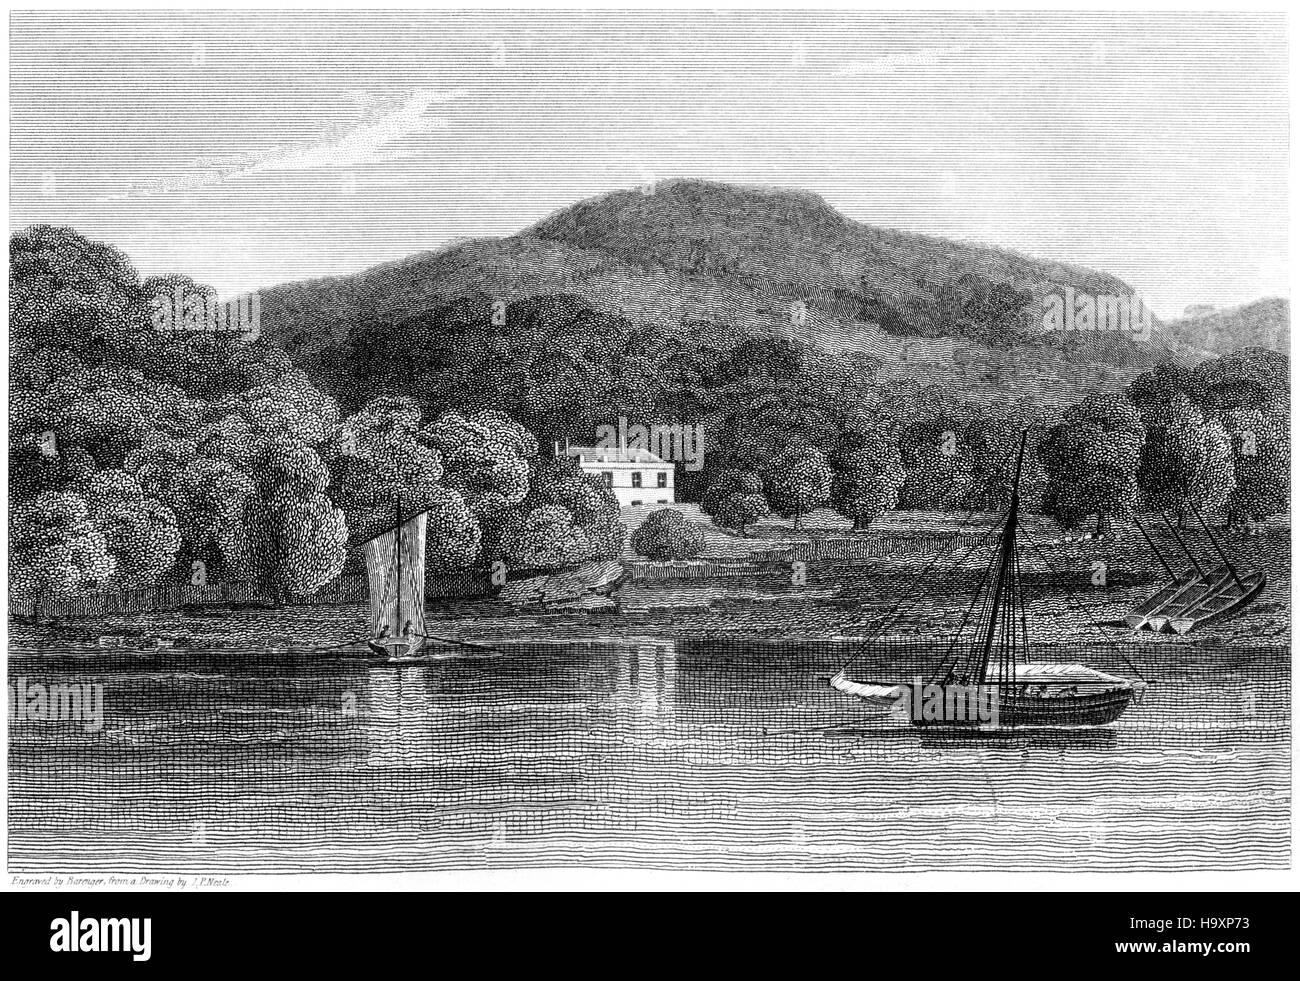 Eine Gravur der Briton Ferry gescannt Glamorganshire in hoher Auflösung aus einem Buch, gedruckt im Jahre 1812. Kostenlos copyright geglaubt. Stockfoto